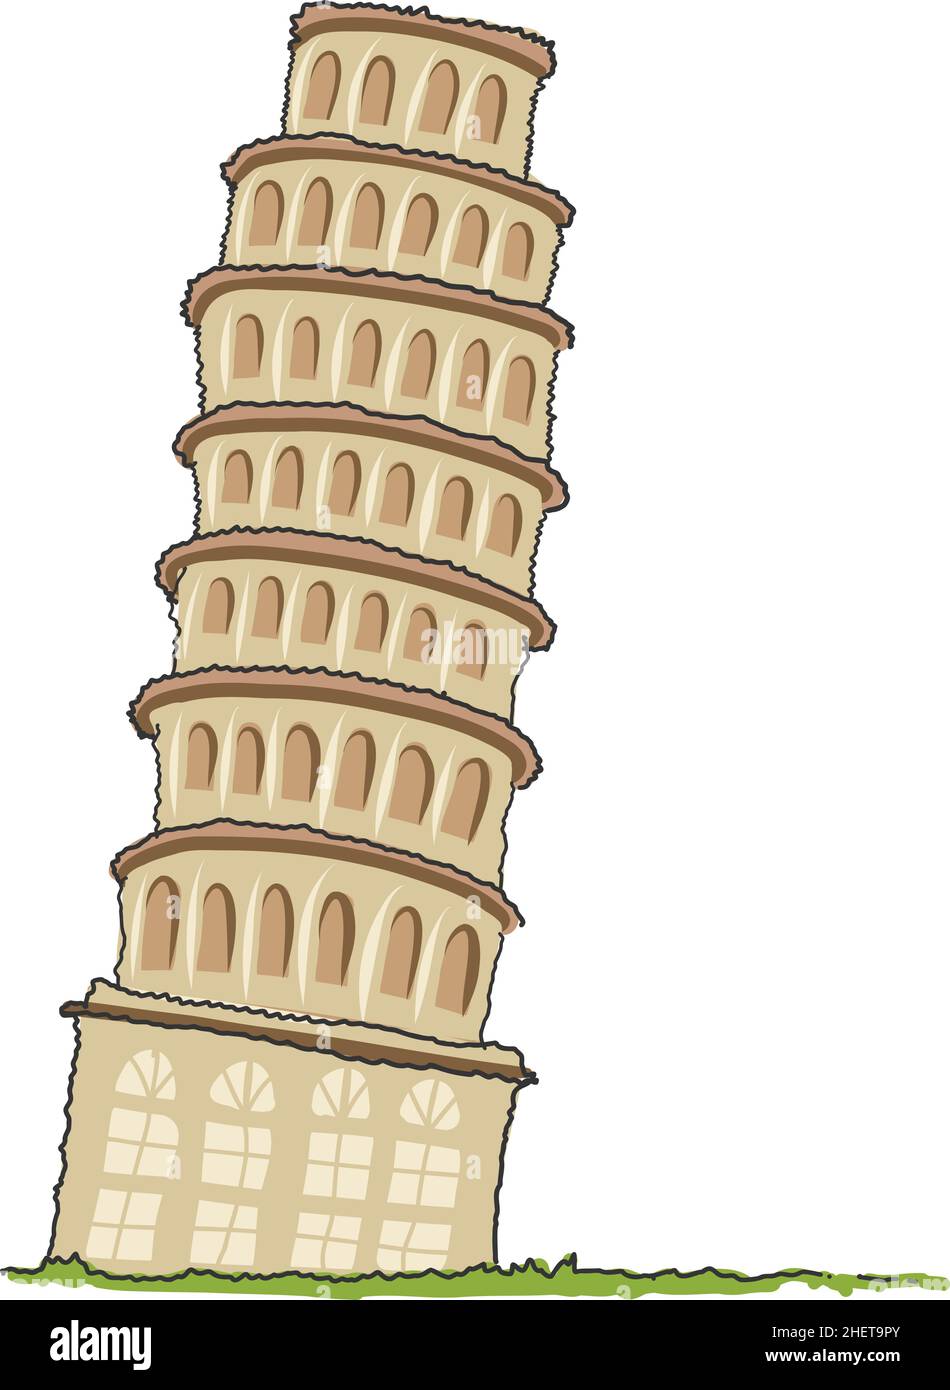 Torre di Pisa in stile barbatella illustrazione vettoriale isolato piccolo paesaggio con Torre Pendente di Pisa, prato verde. Famoso punto di riferimento per l'Italia. Vettore piatto desi Illustrazione Vettoriale